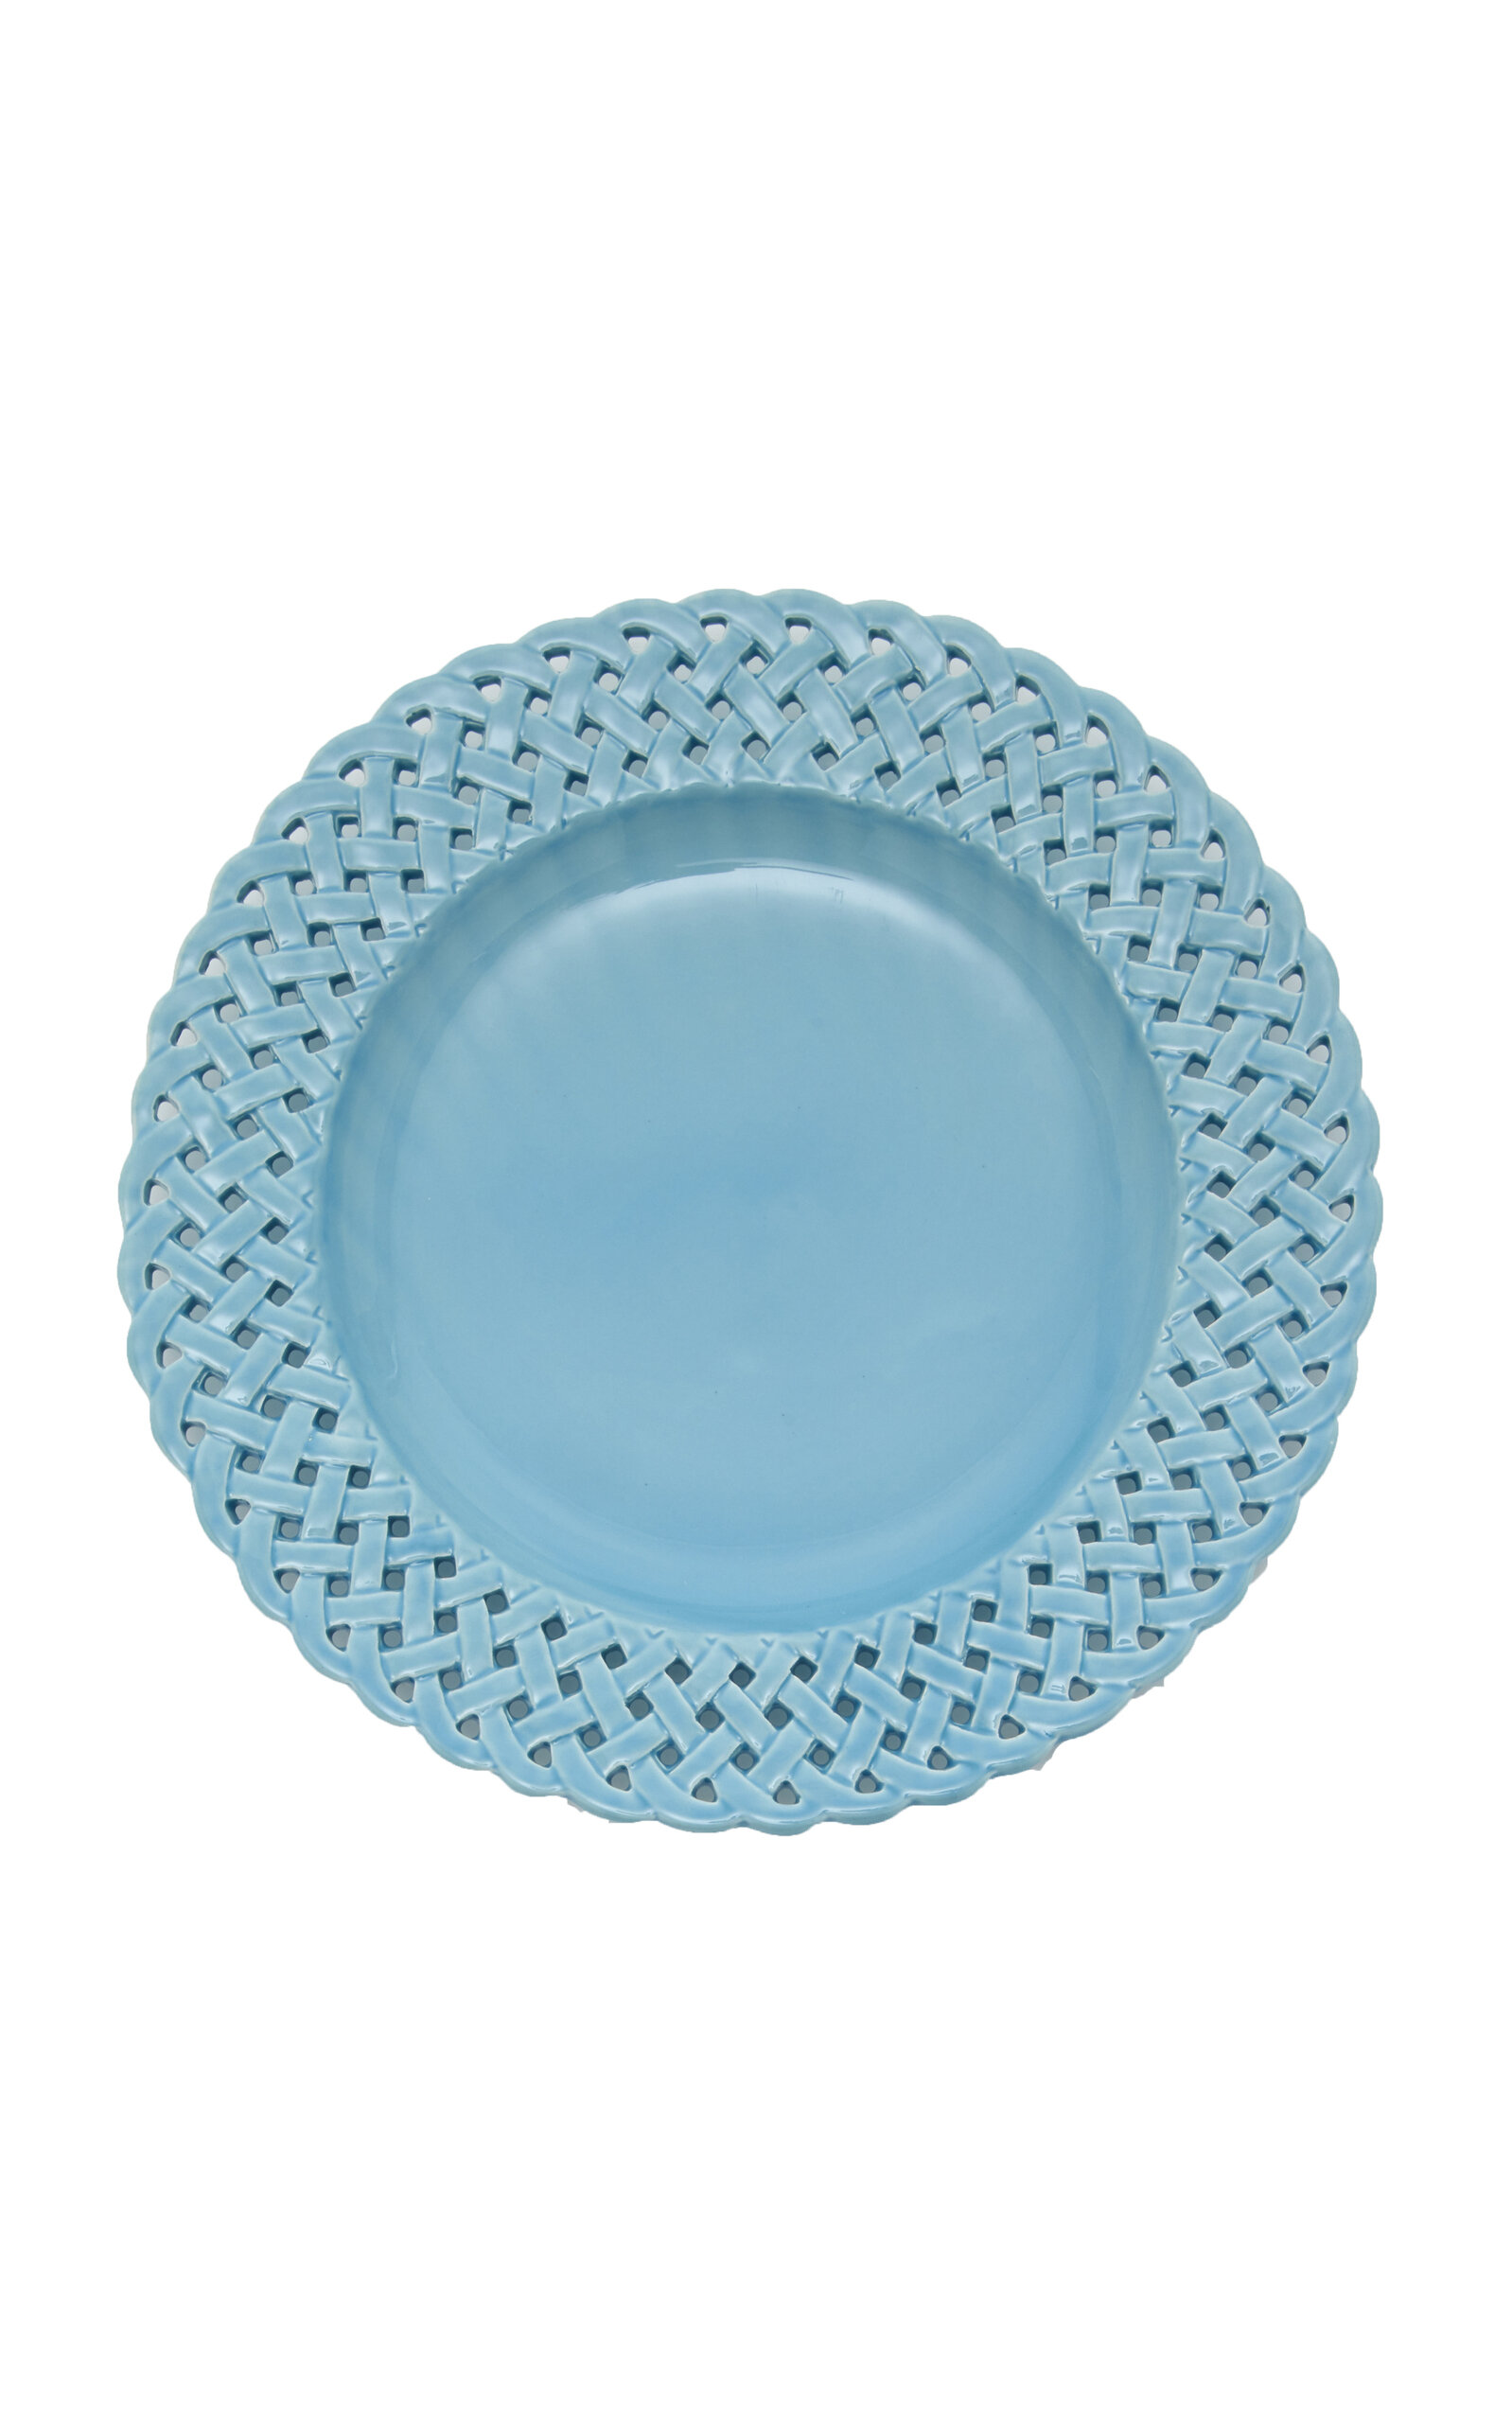 Moda Domus Hopenwork Creamware Dinner Plate In Blue